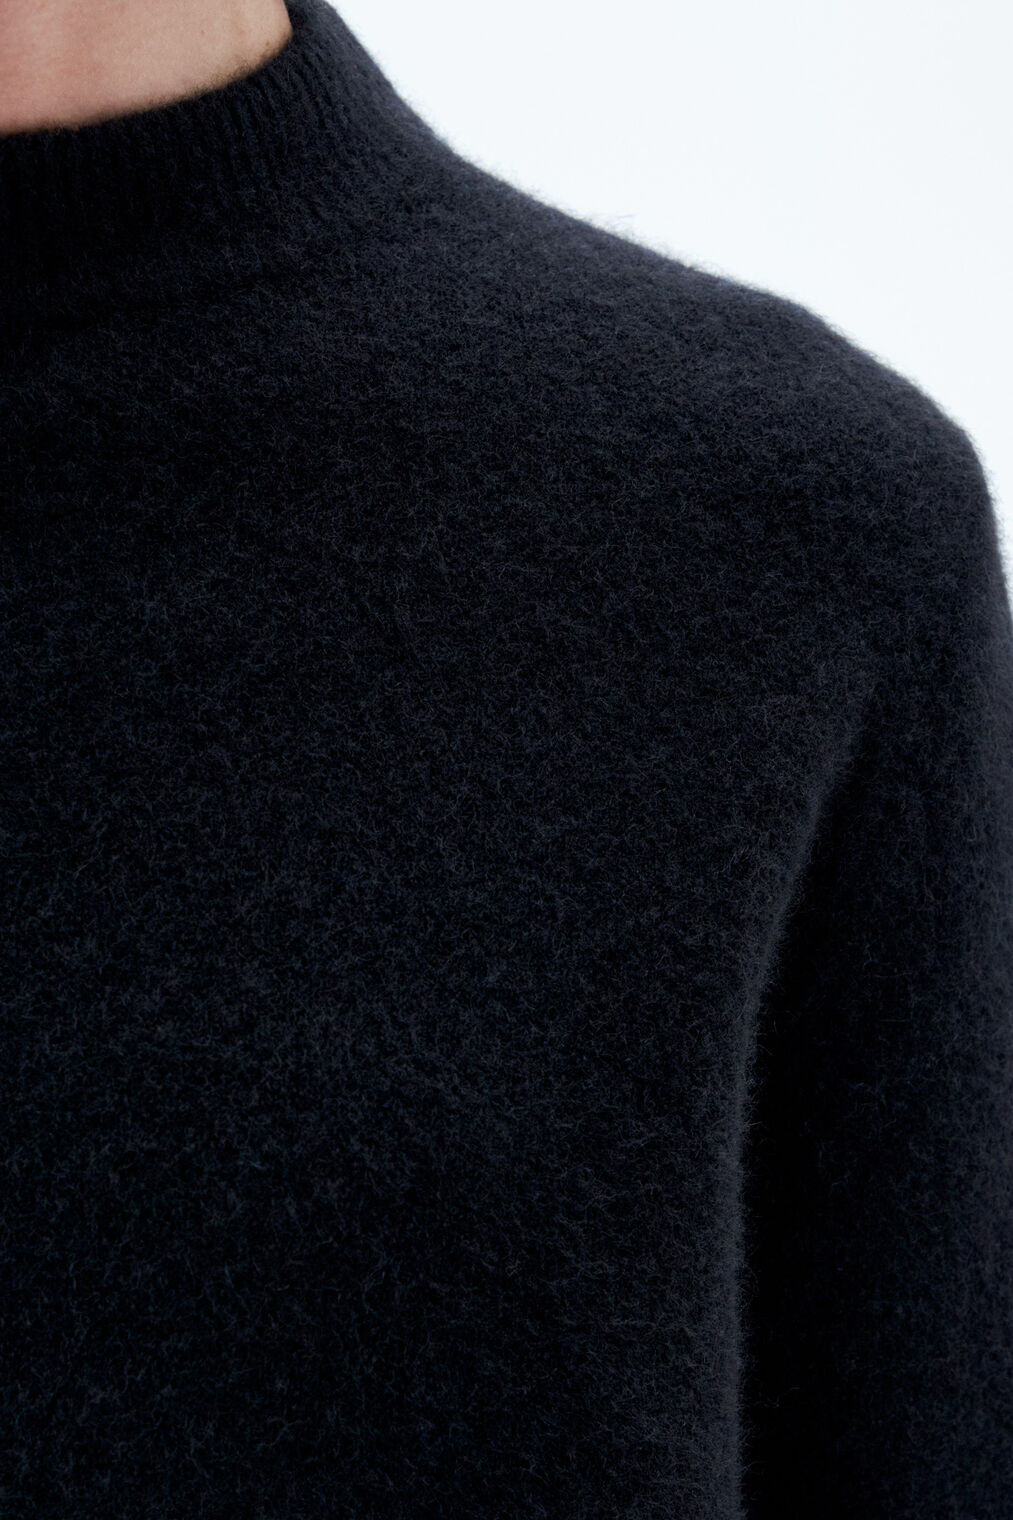 Johannes yak sweater in black